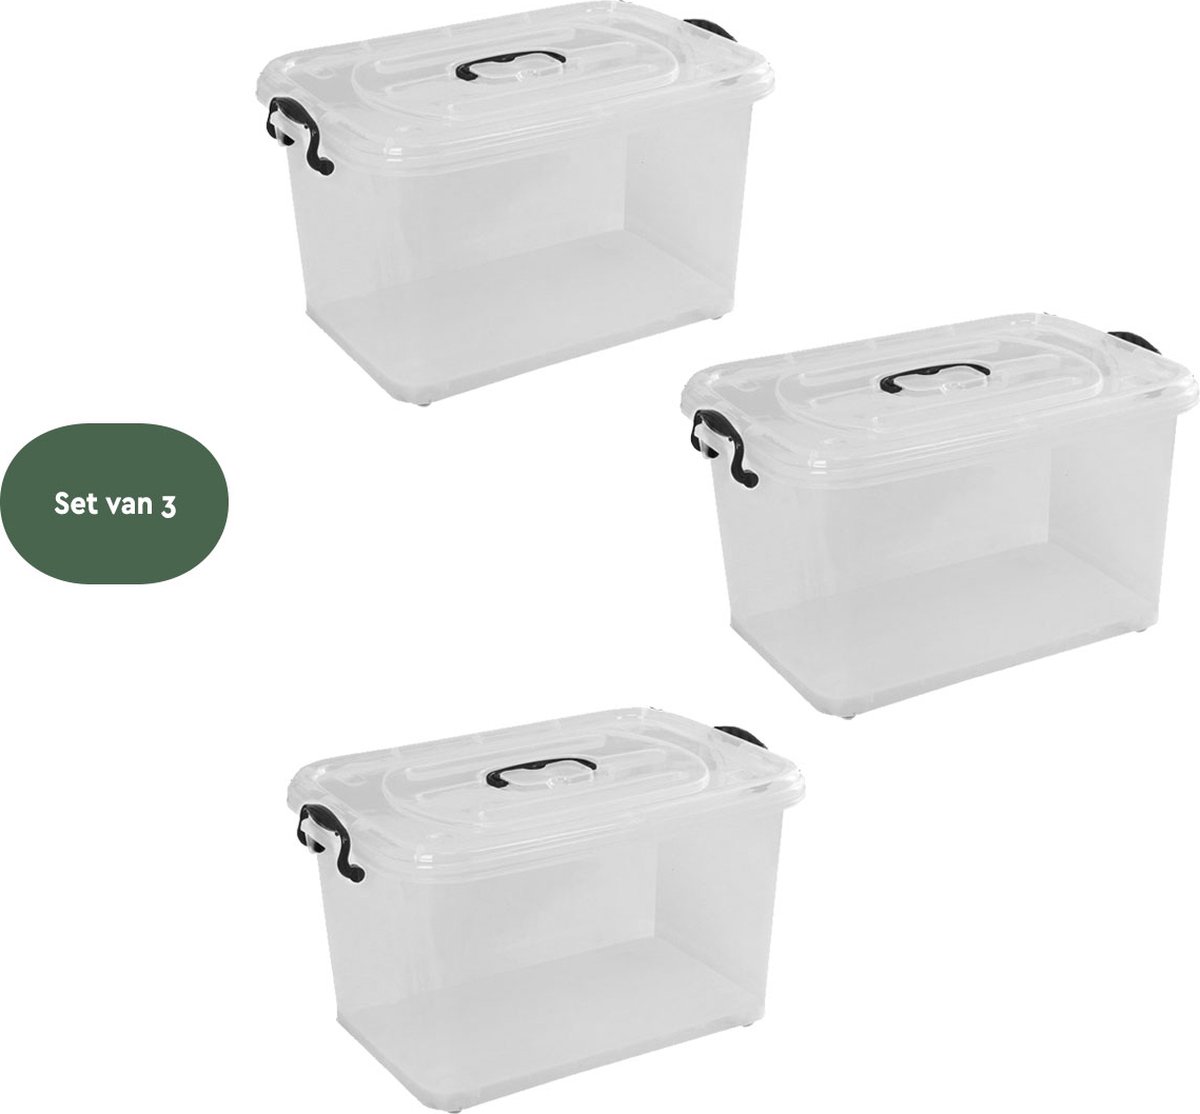 BRASQ Plastic Opbergbox 28 Liter - Set van 3 - Opbergdoos met deksel - Met Wieltjes